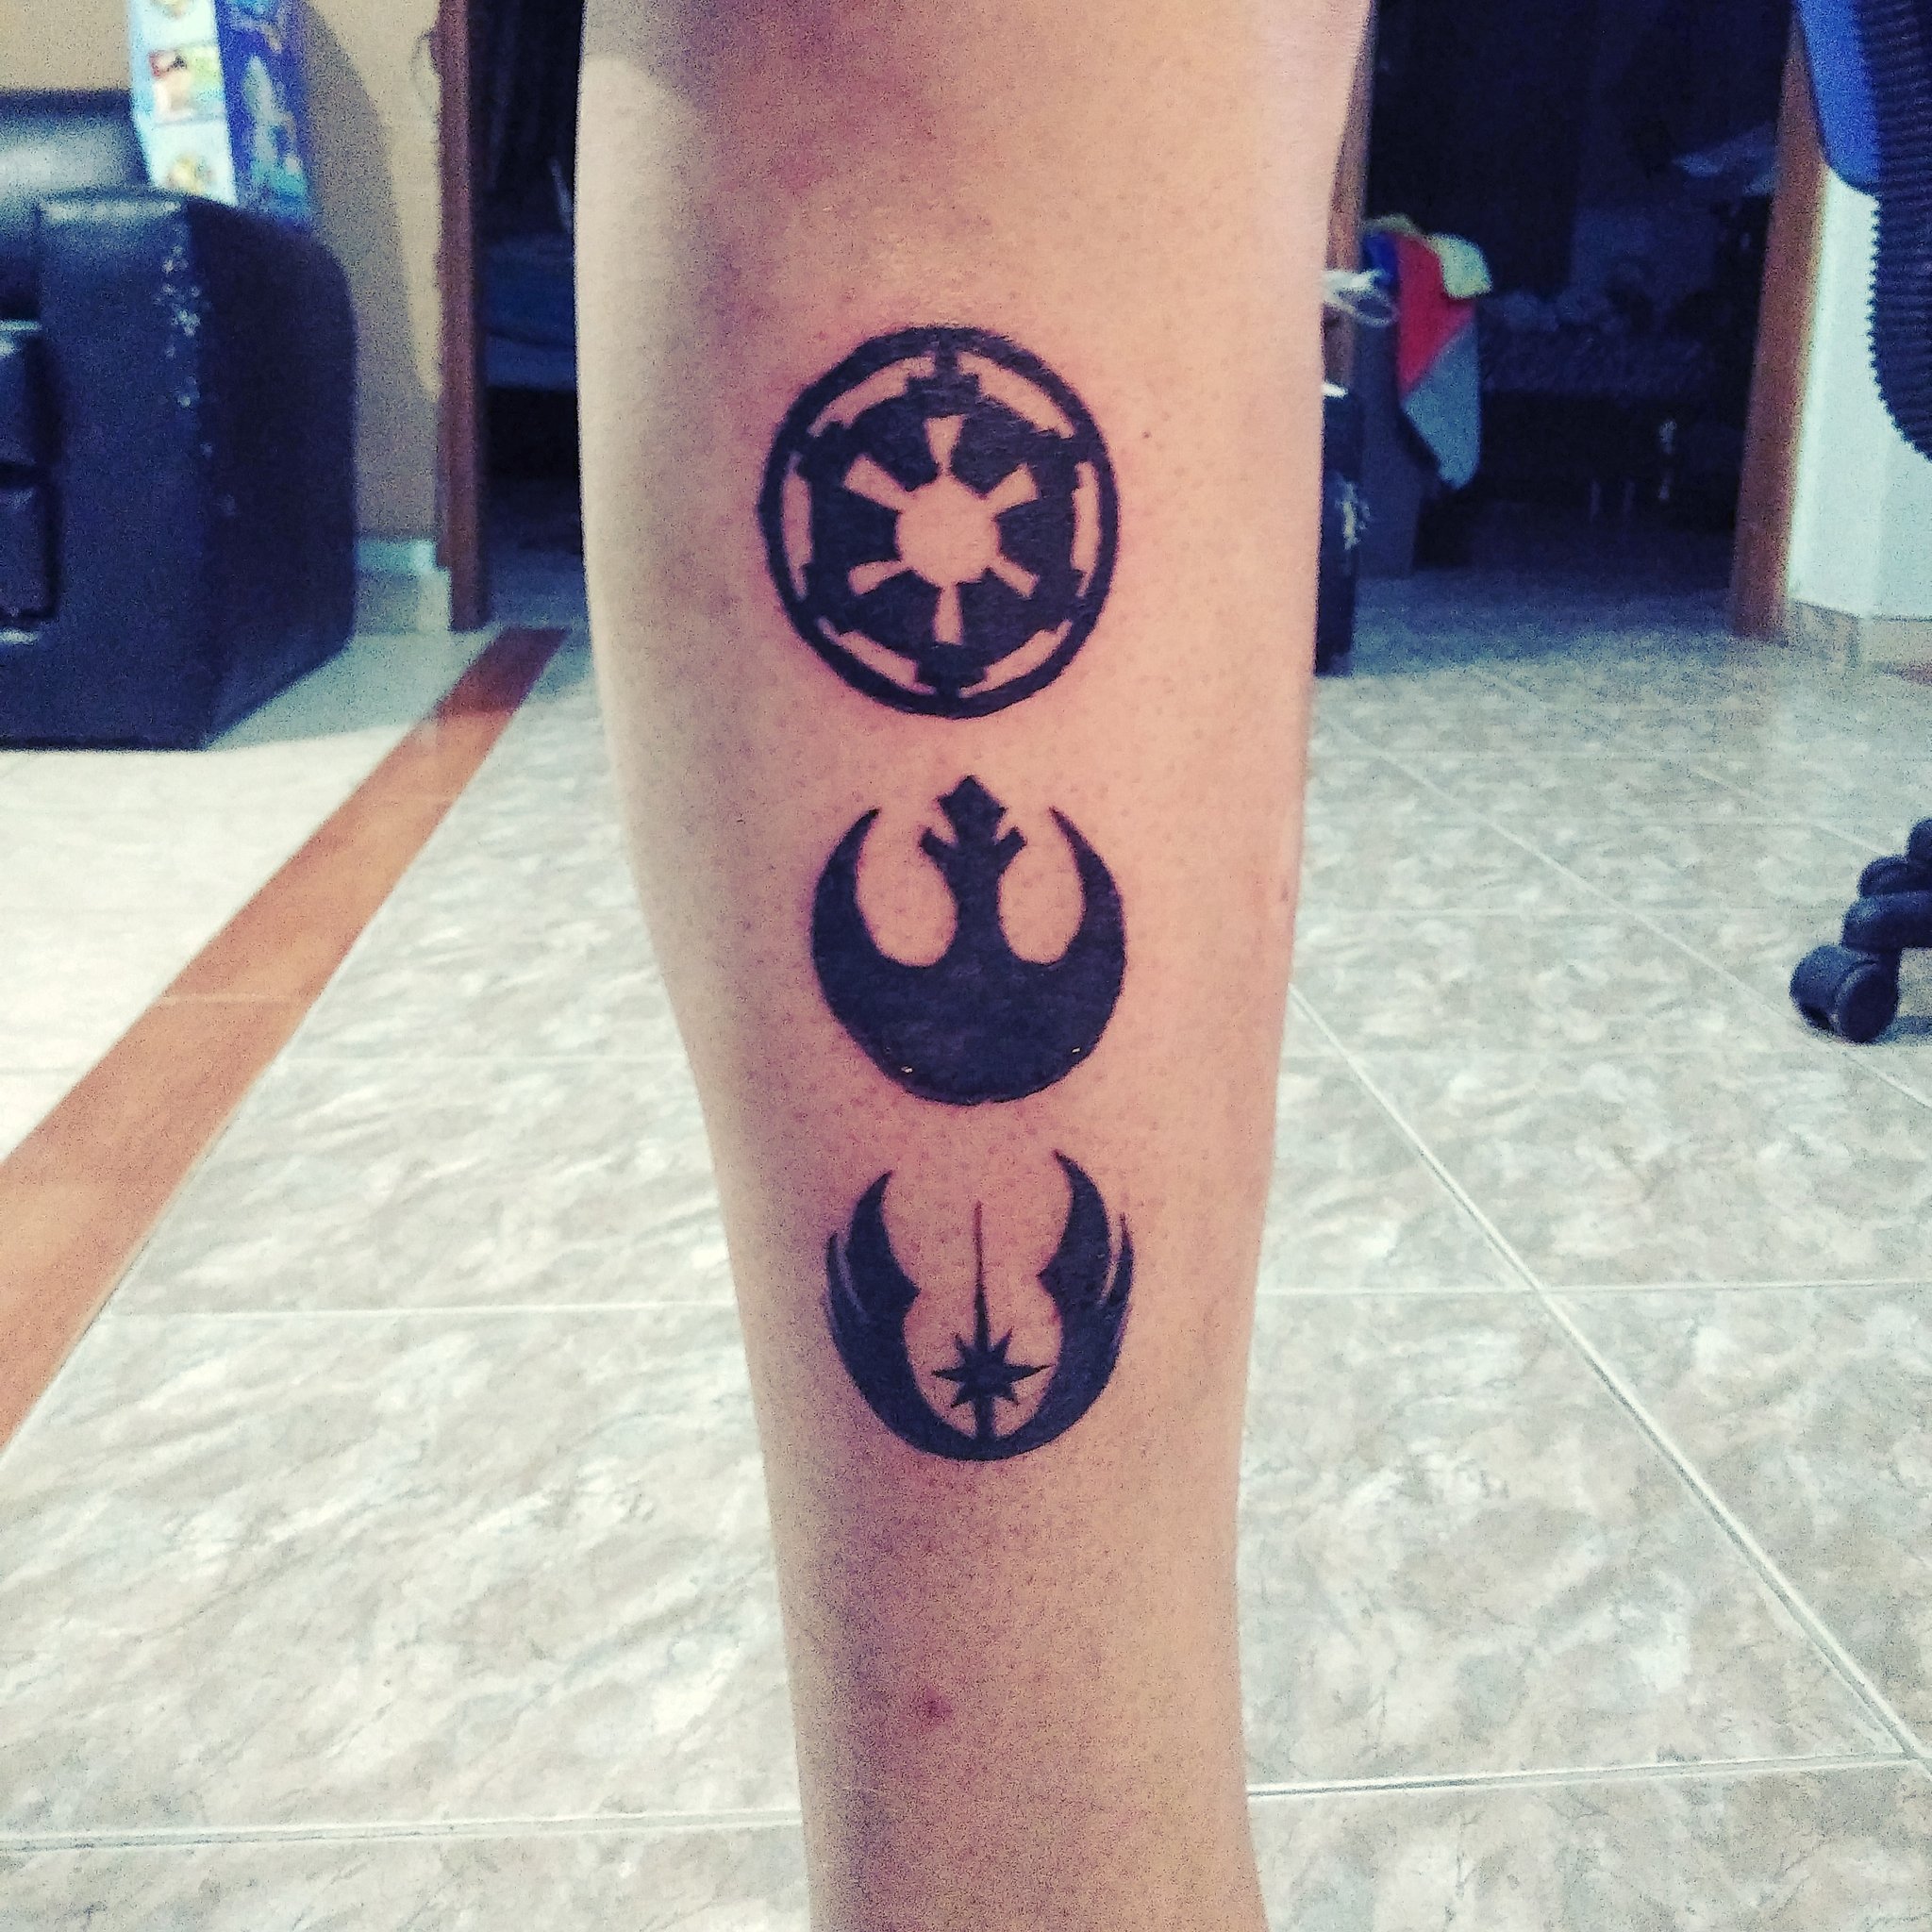 Asgars Fight Club on Twitter Star Wars Tattoo tatuaje tattoo  starwars jedi empire rebels starwarstattoo blackink inktober ink  httpstcoHPGVNklYjX  Twitter